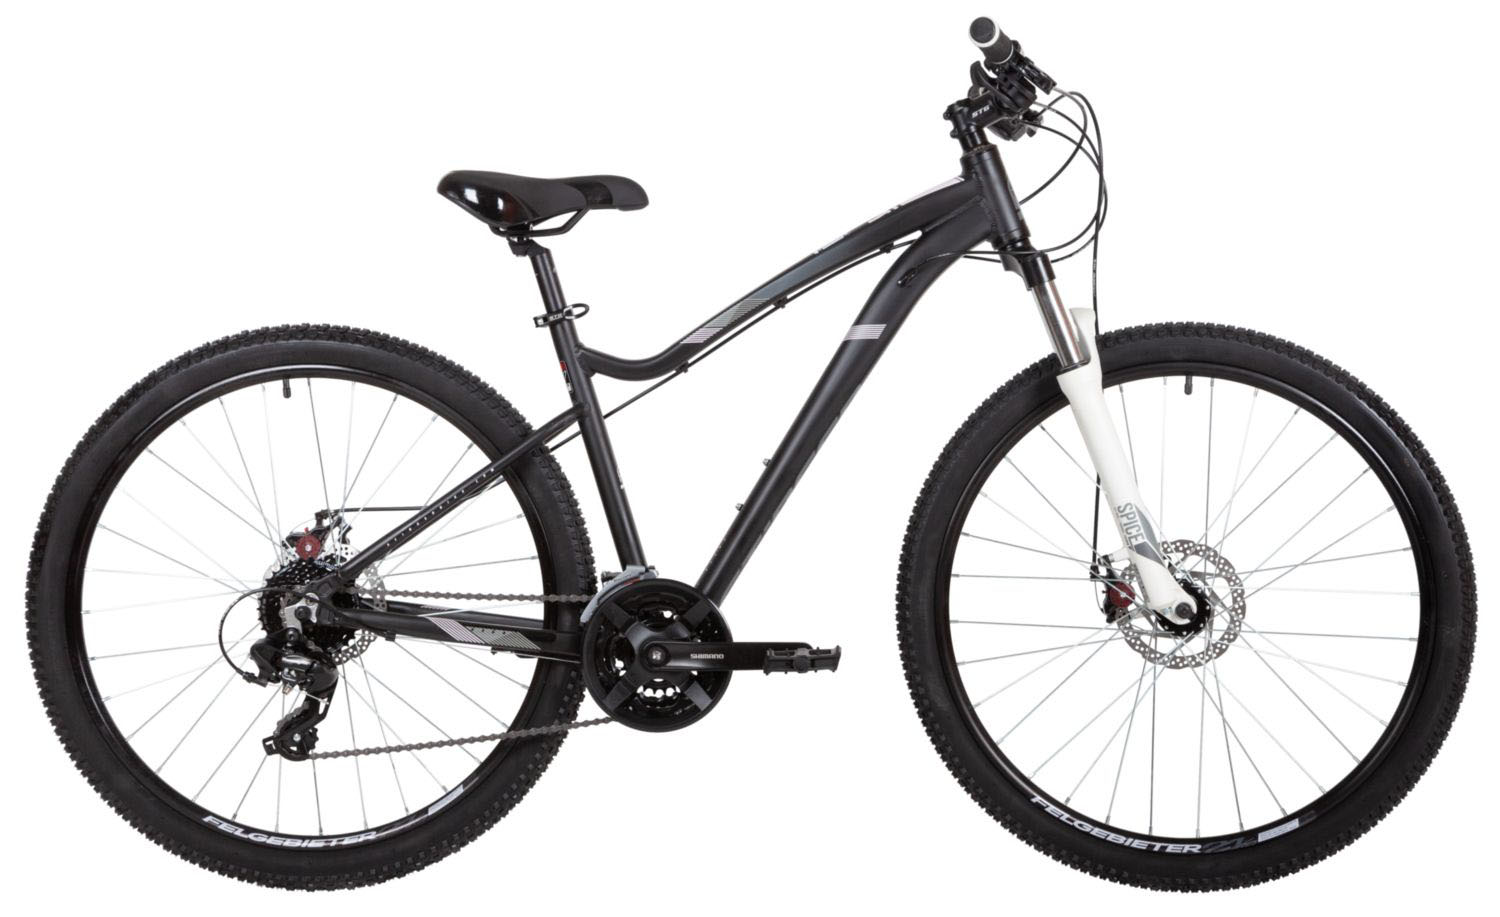  Отзывы о Горном велосипеде Stinger Vega STD 27 2021